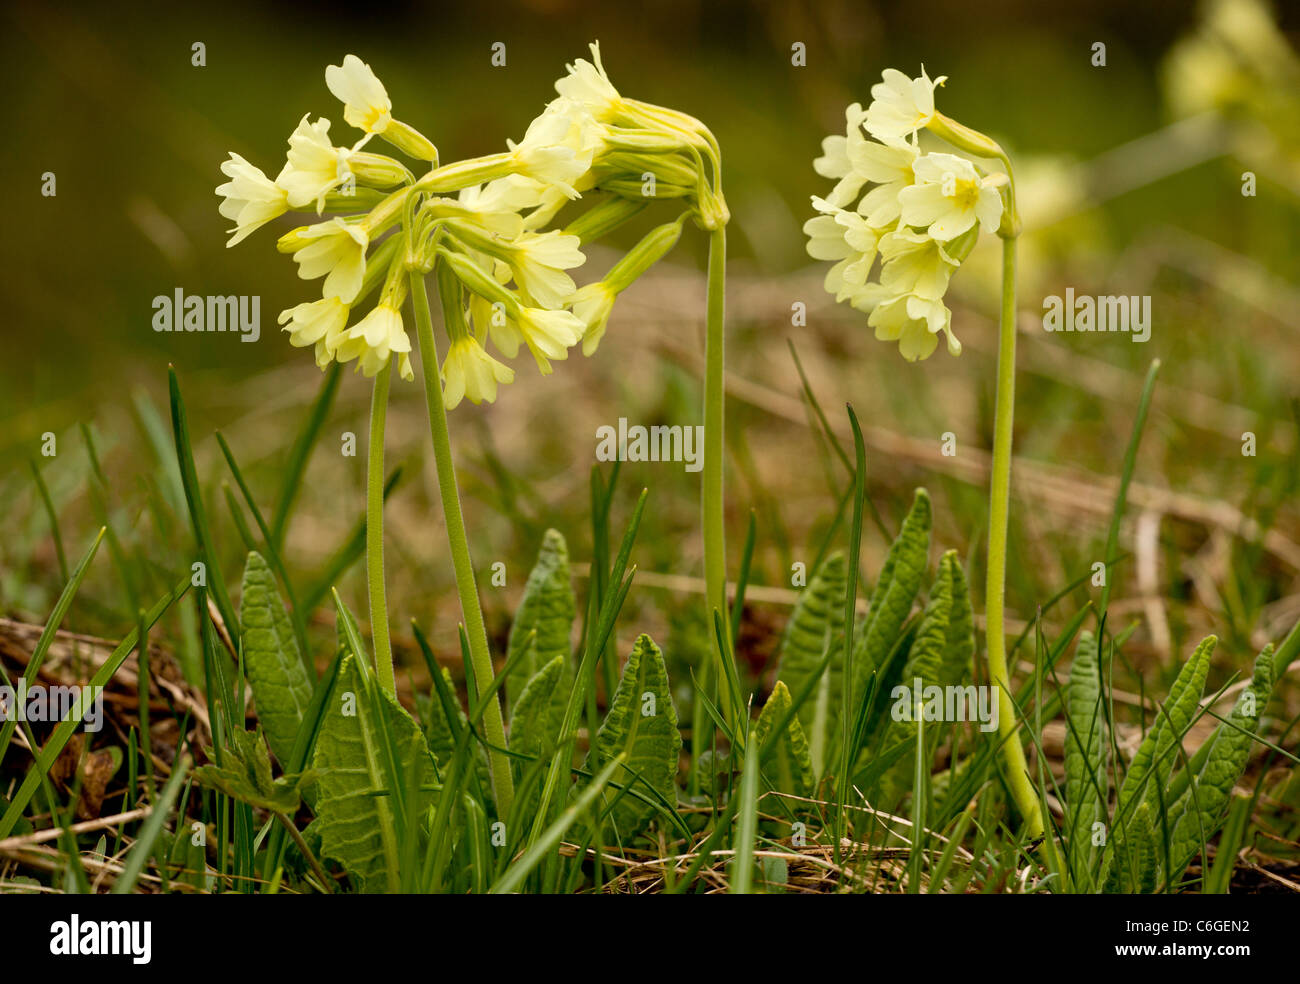 Oxlip, or True Oxlip, Primula elatior in flower in high alpine pastures. Bulgaria. Stock Photo